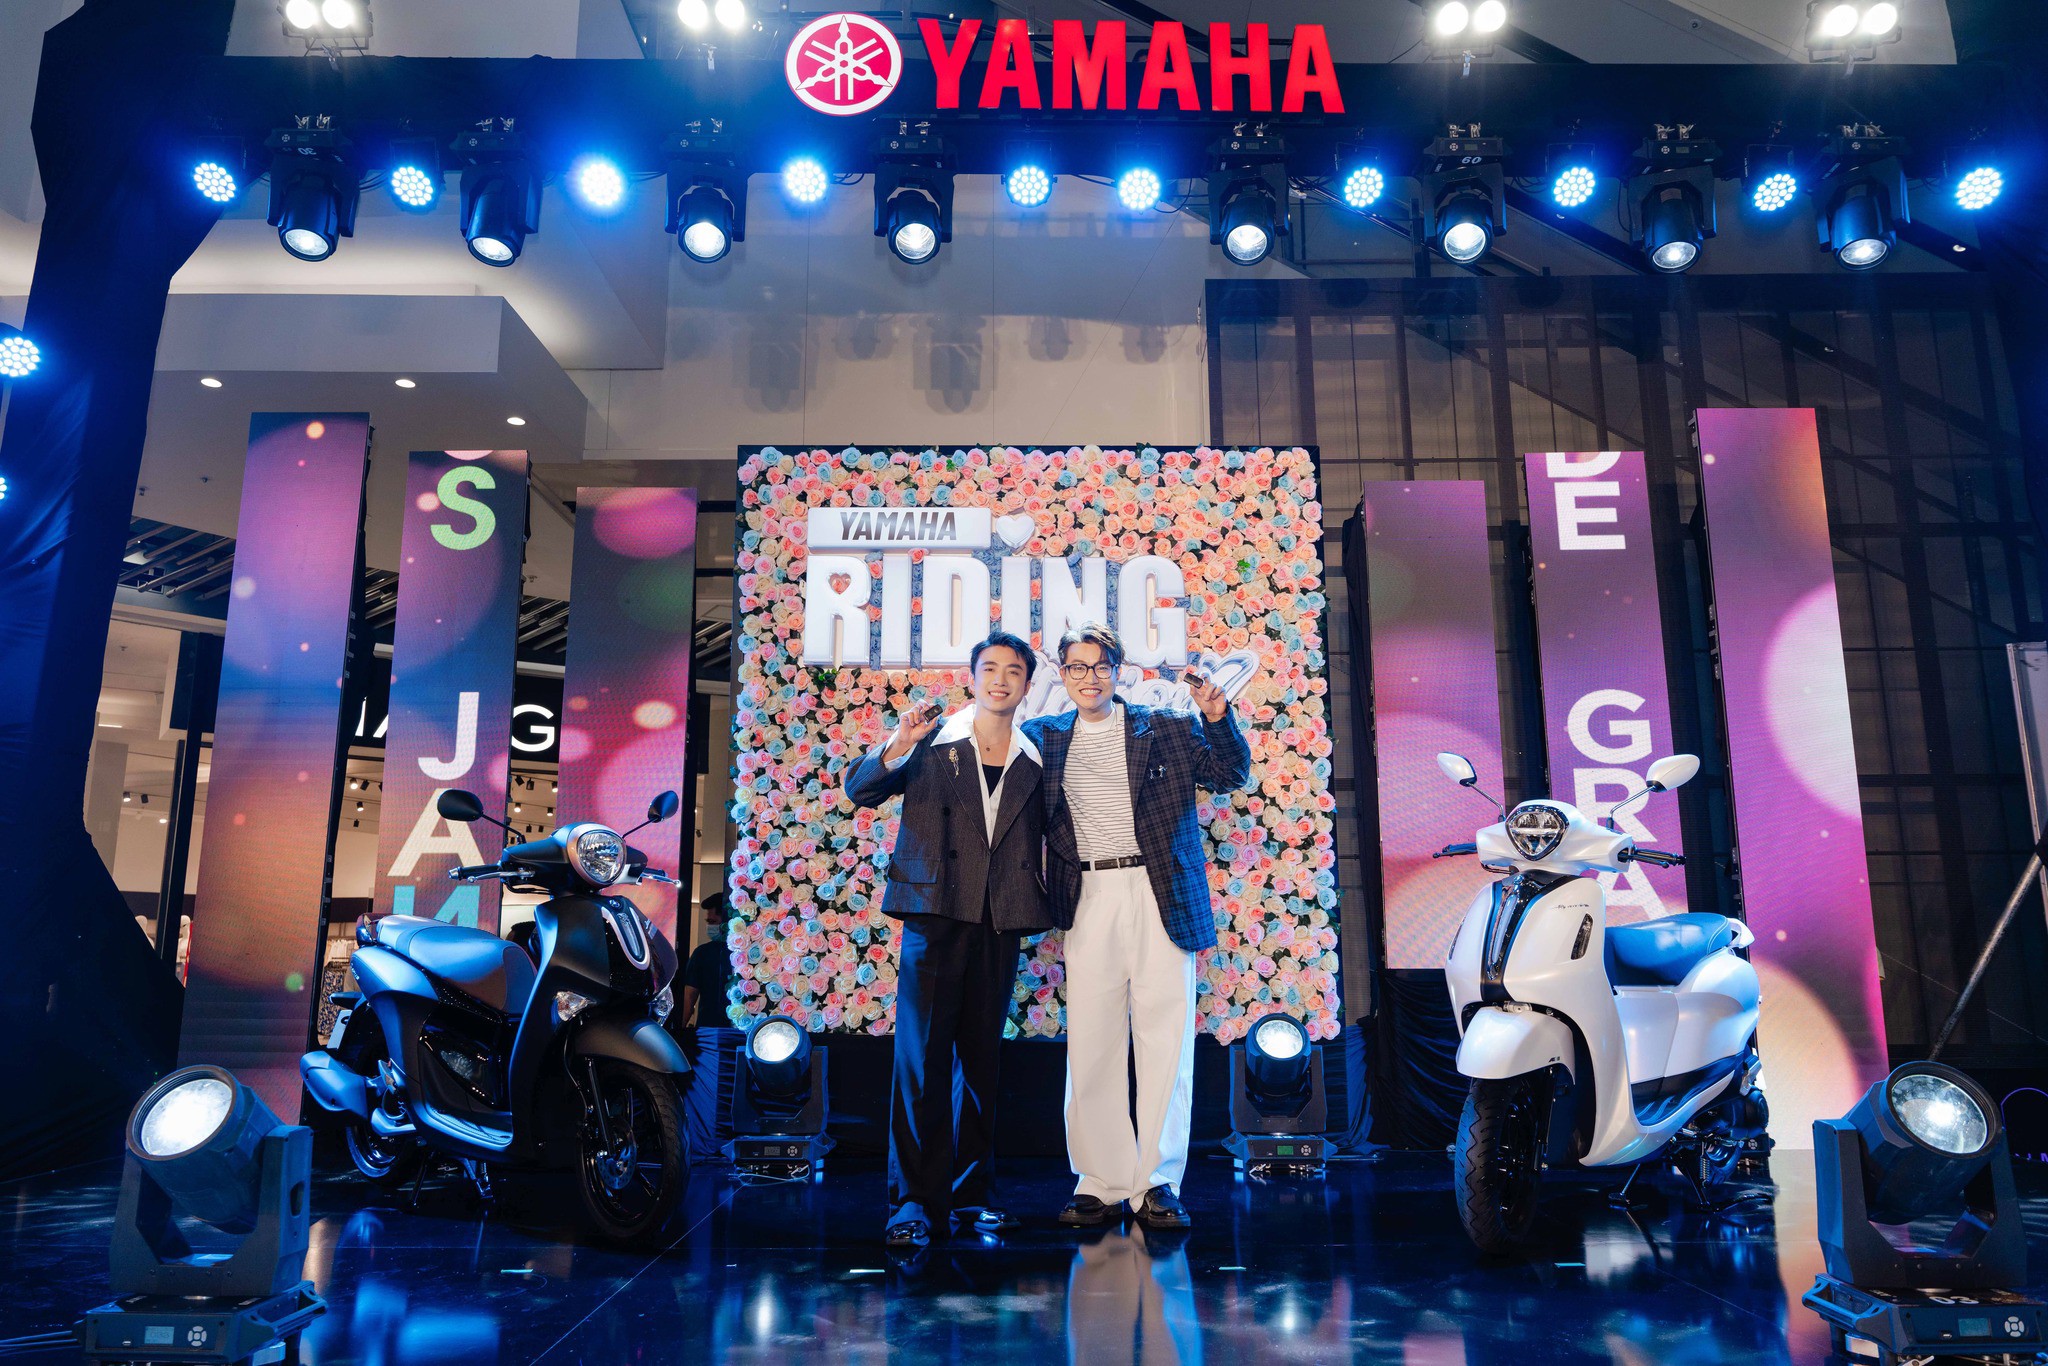 Ninh Dương Couple khuấy động không khí tại sự kiện Yamaha Riding Station Hà Nội